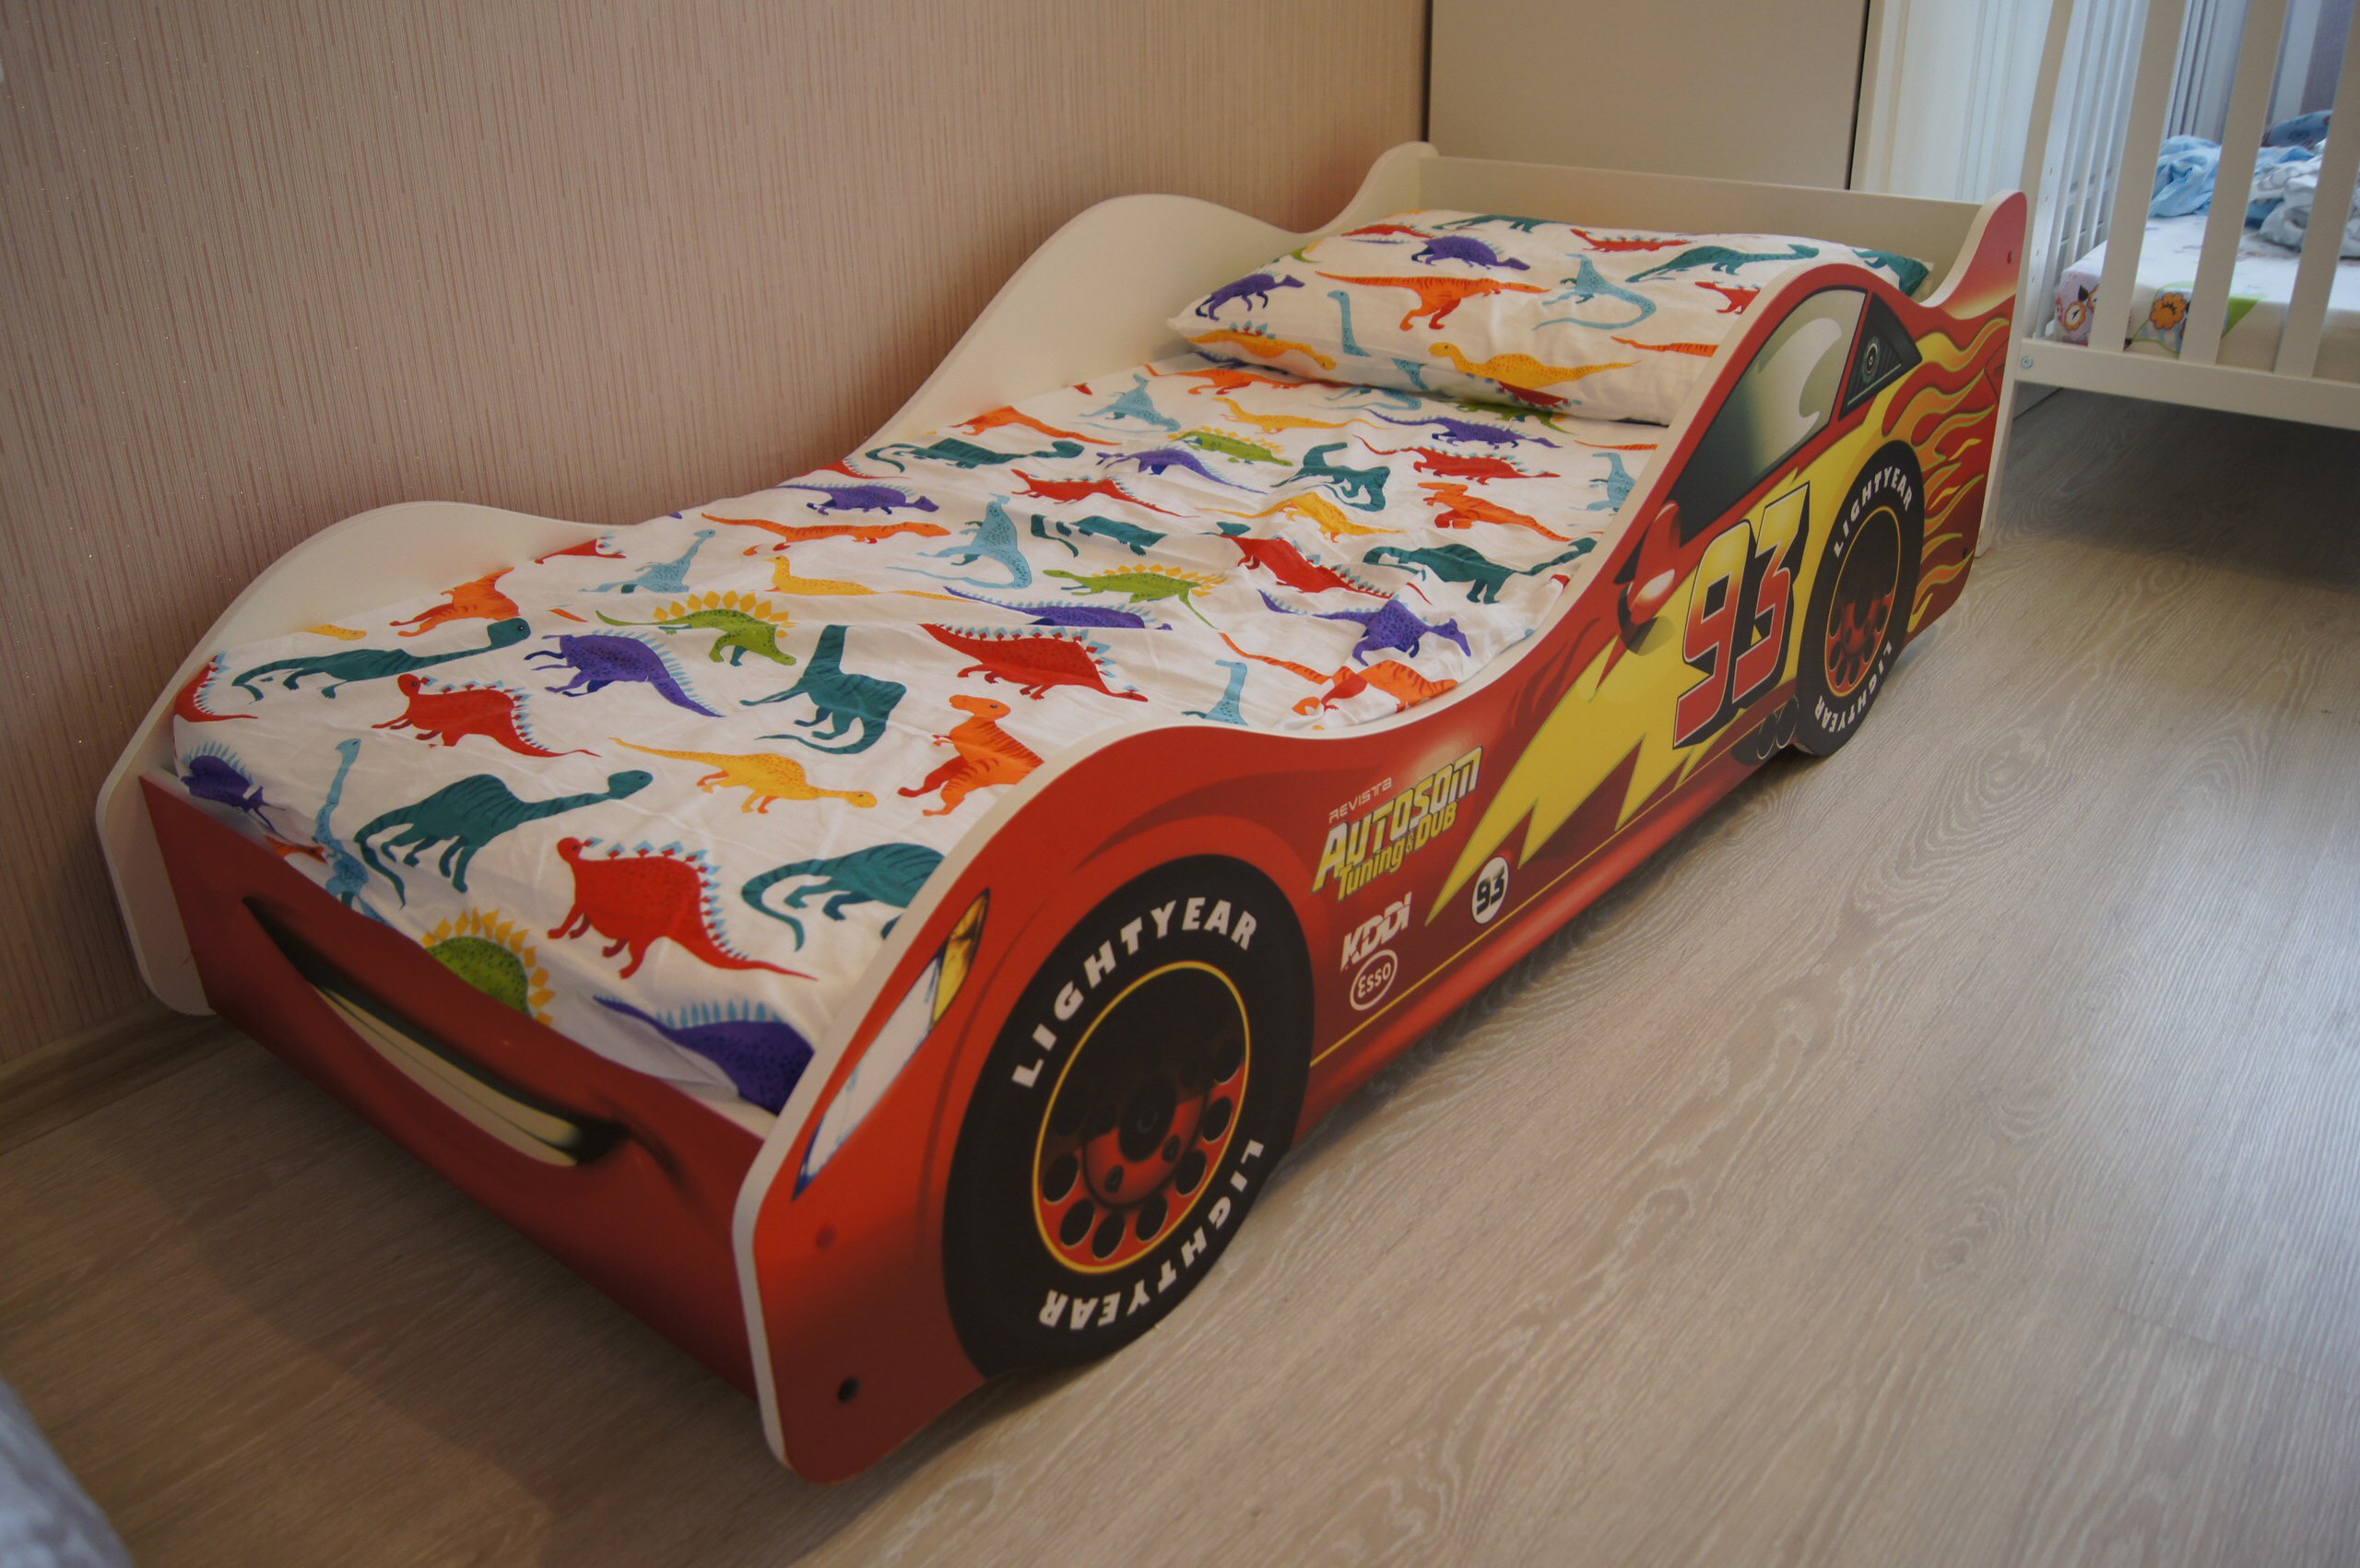 Кровать молния маквин. Funky Kids кровать молния Маквин. Детская кровать машинка Маквин. Покрывало на кровать машинку. Кровать детская молния Маквин машинка.